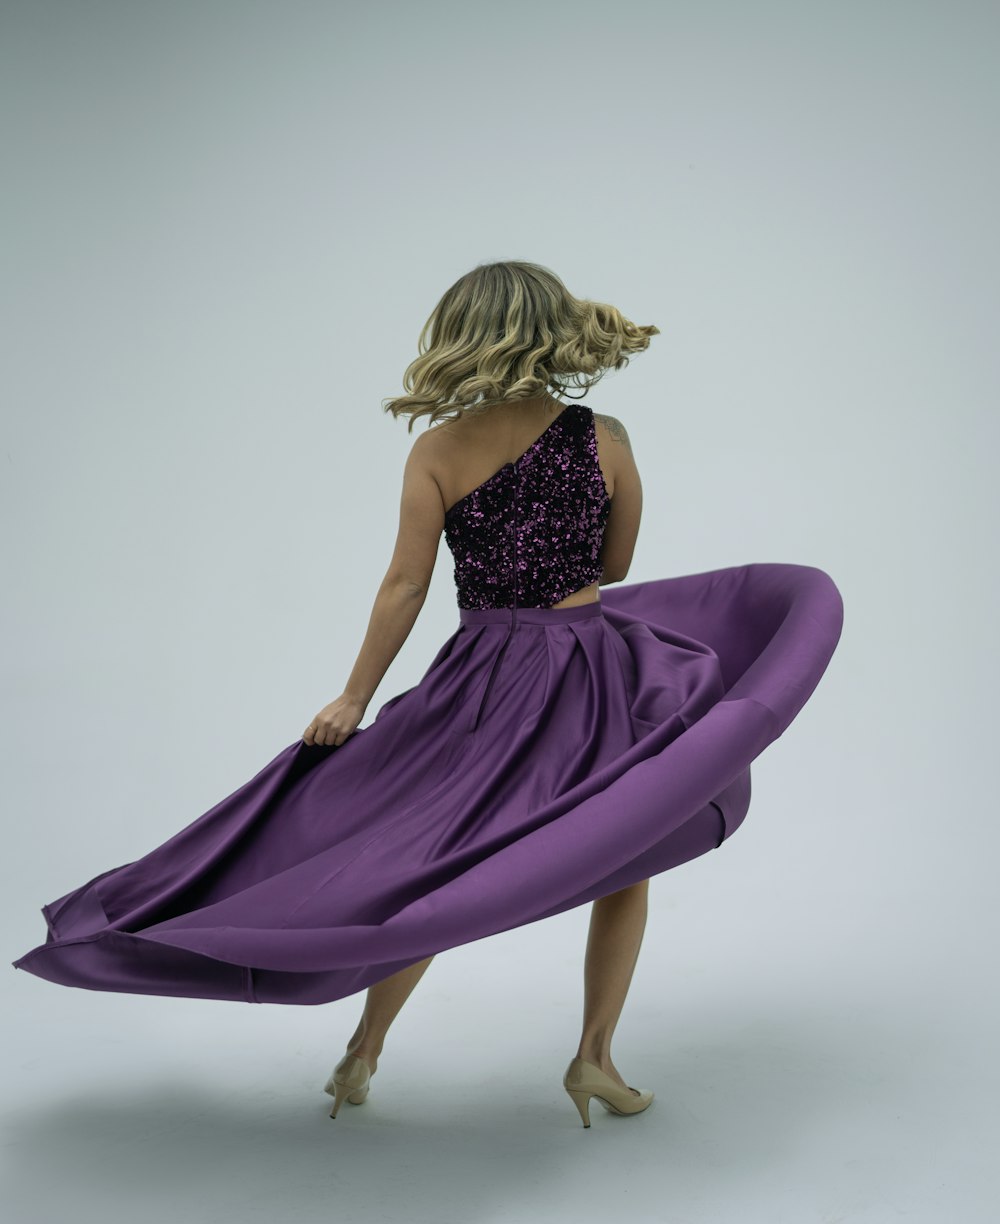 a woman in a purple dress is dancing